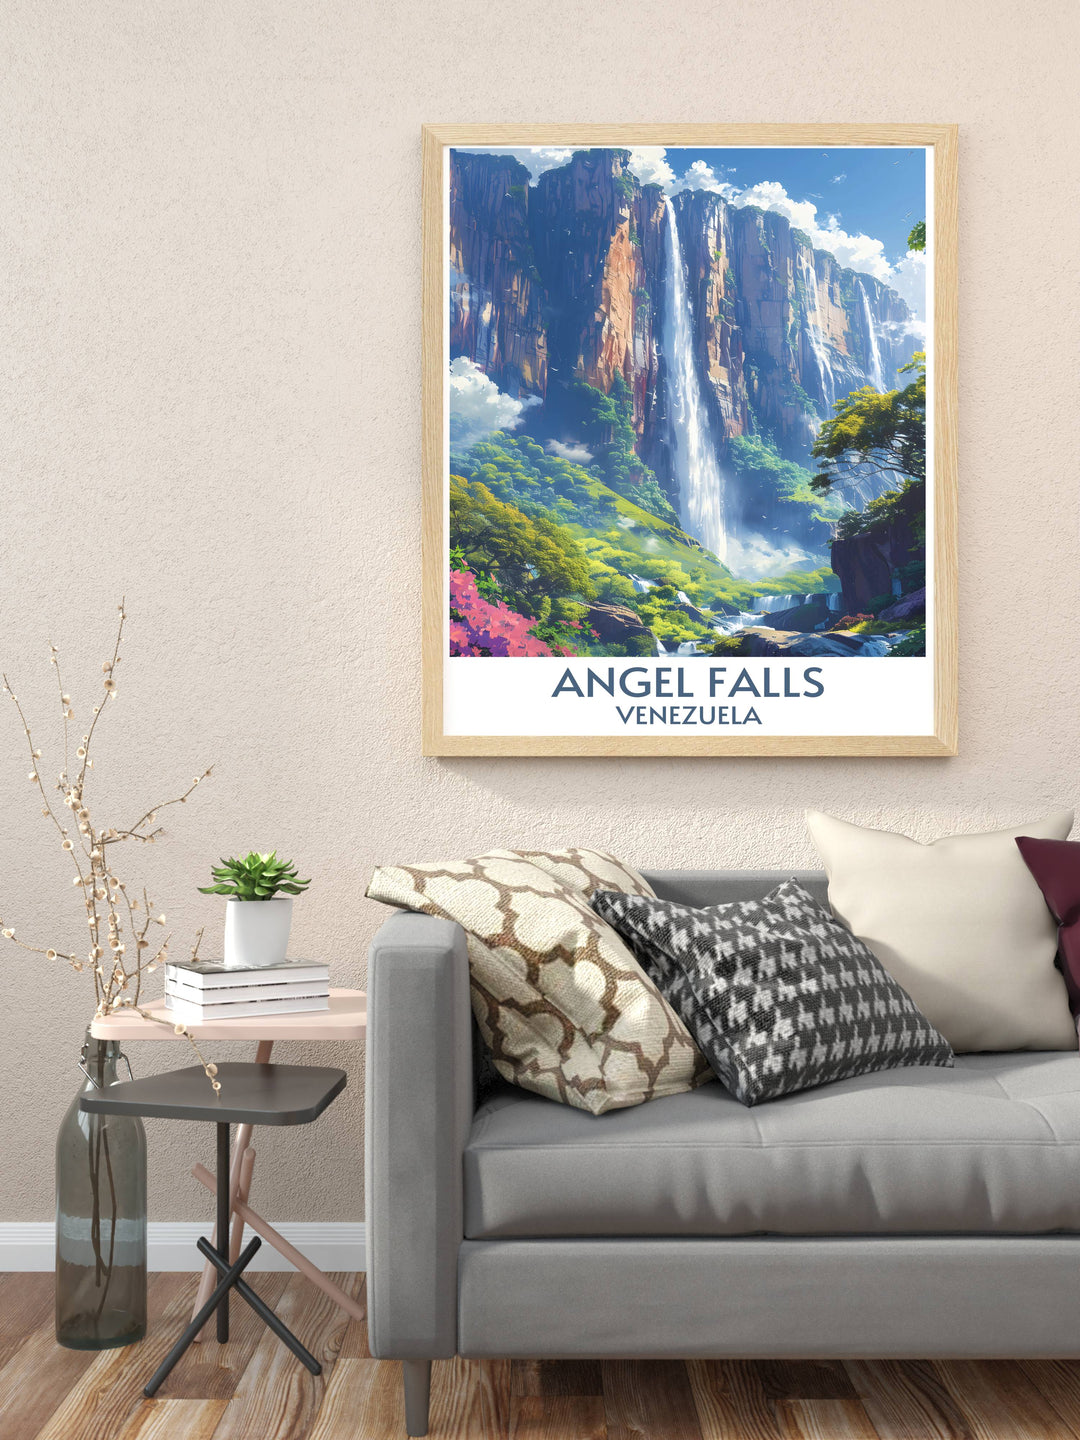 Retro travel poster of Angel Falls, blending vintage aesthetics with the splendor of Venezuelan scenery.